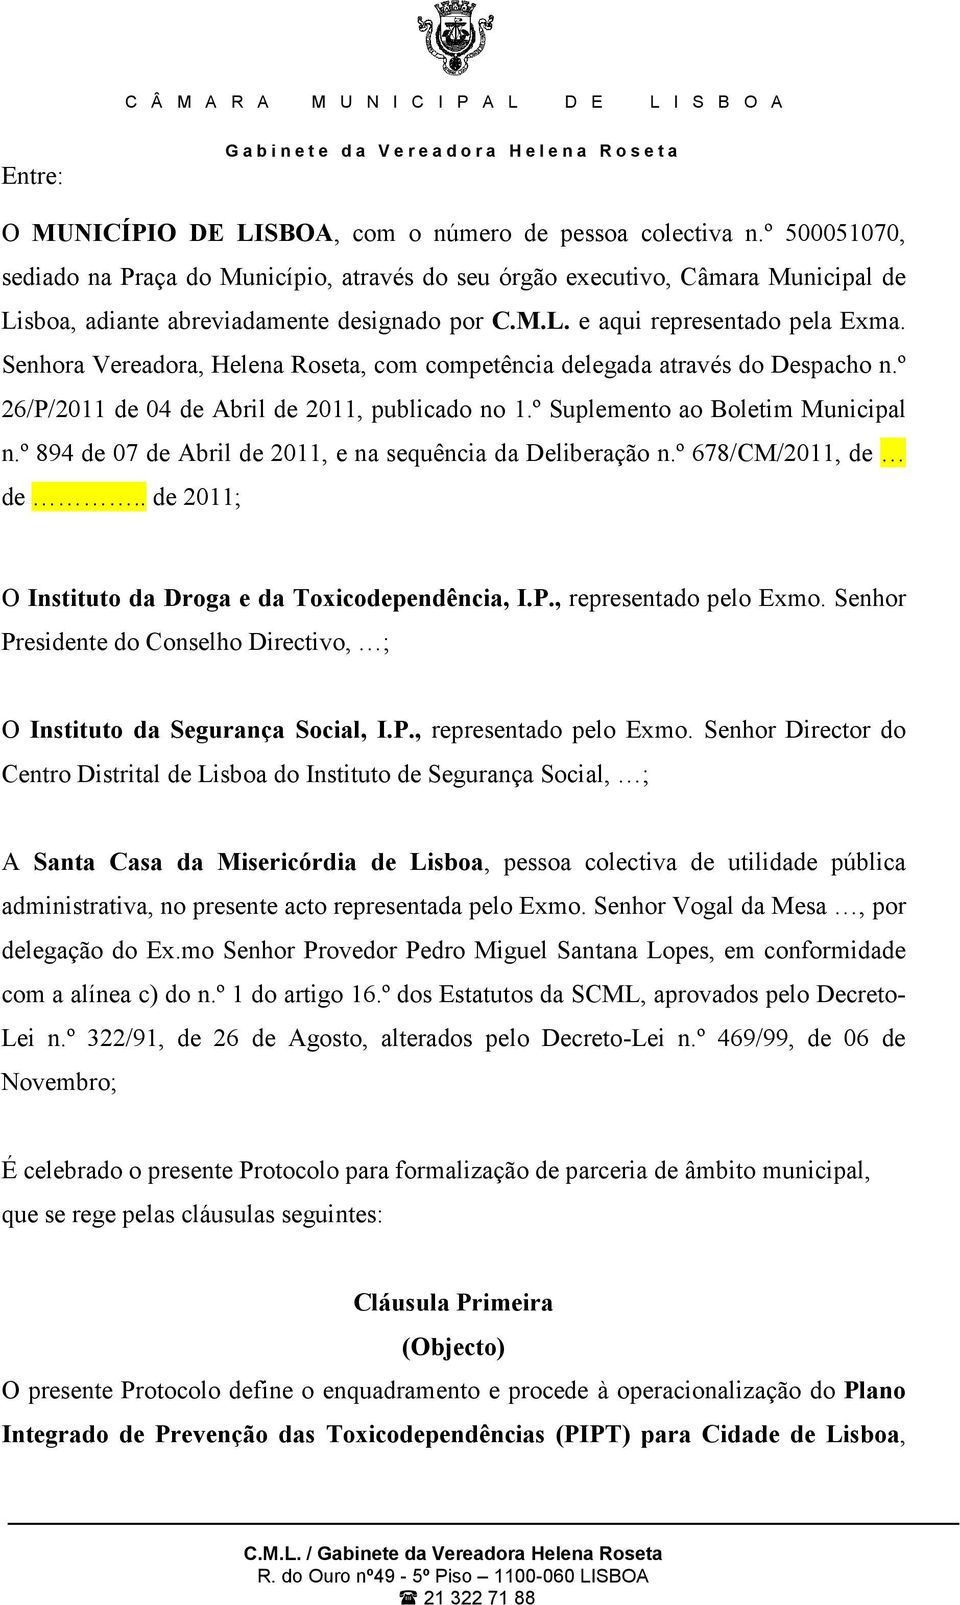 Senhora Vereadora, Helena Roseta, com competência delegada através do Despacho n.º 26/P/2011 de 04 de Abril de 2011, publicado no 1.º Suplemento ao Boletim Municipal n.